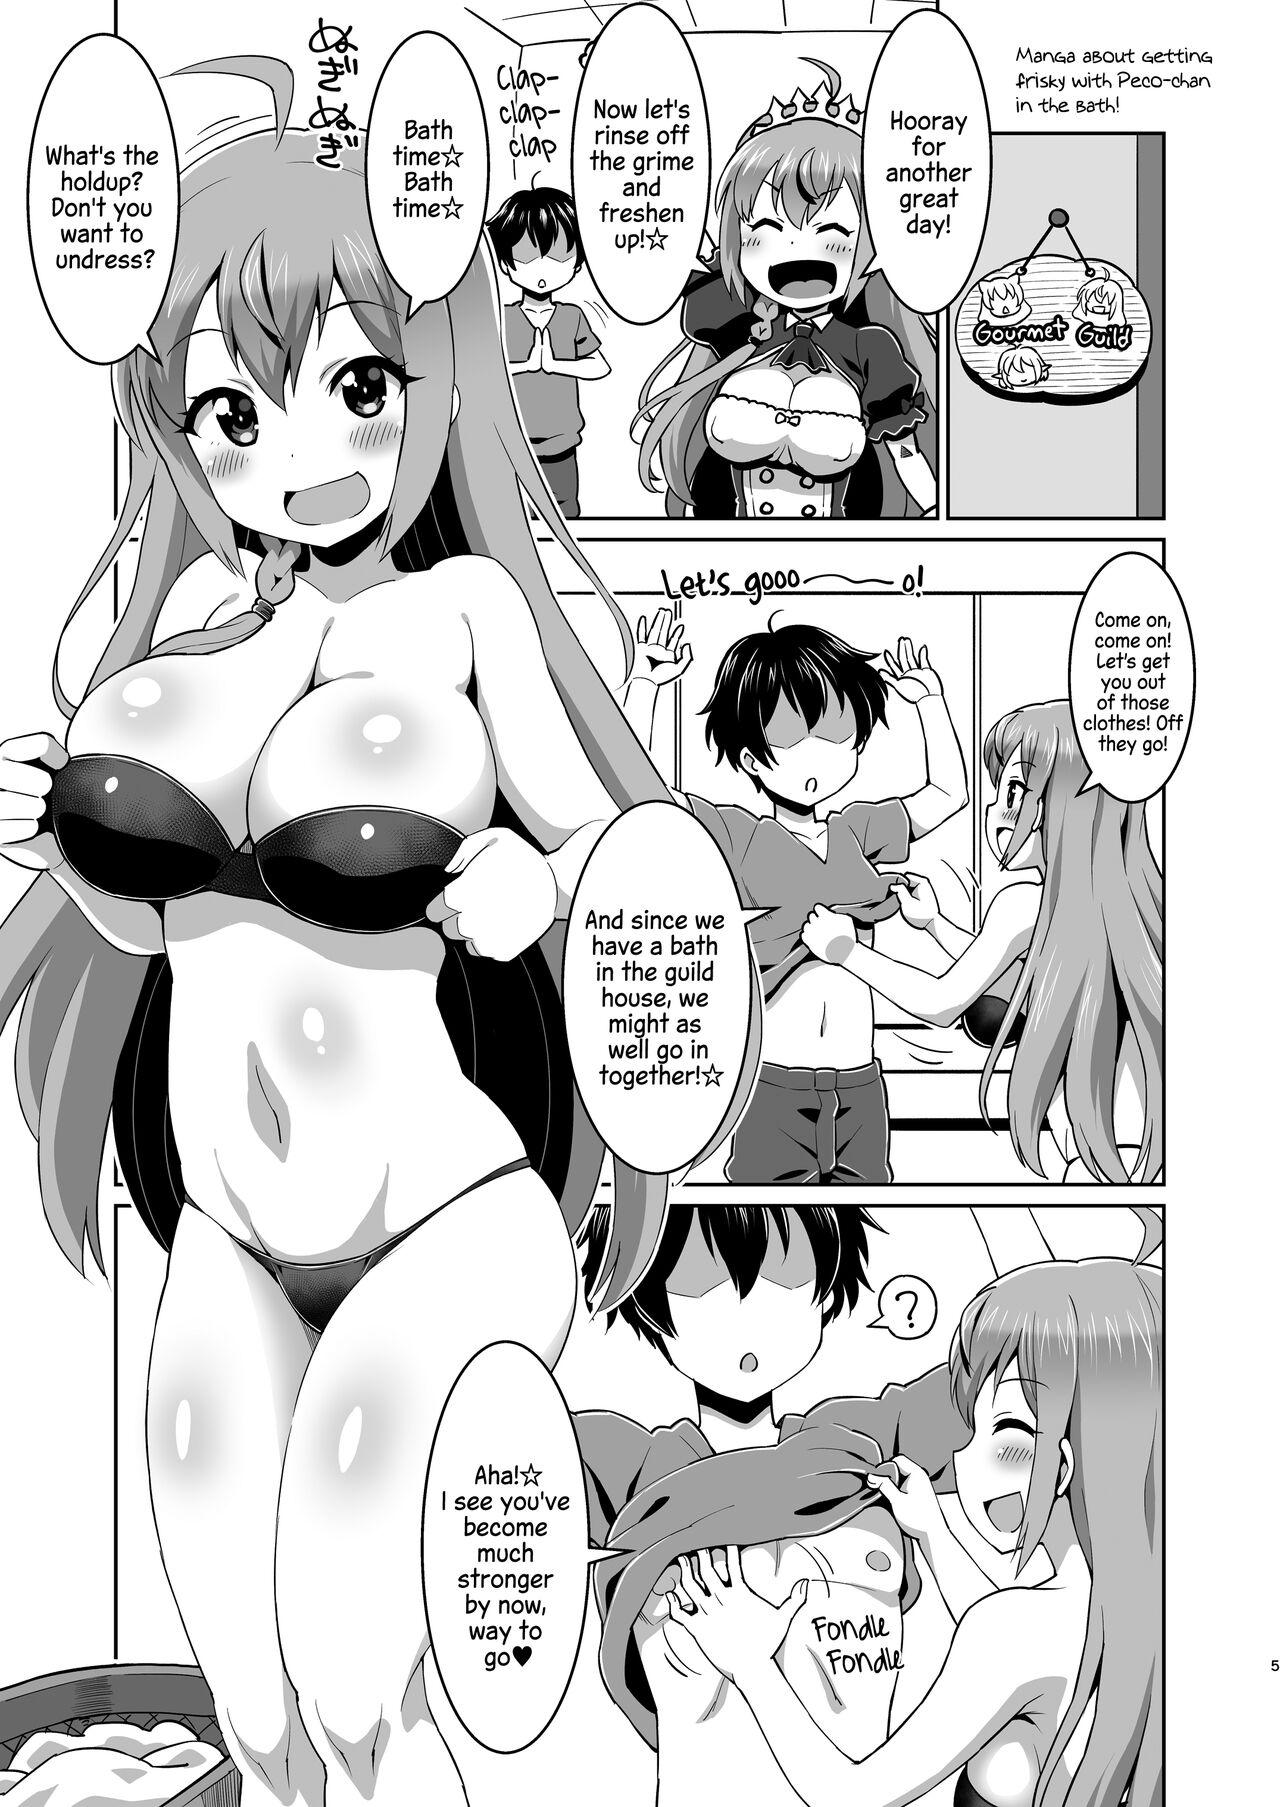 Gay Bang Peco-chan Muccha Kawaii yo ne - Princess connect Slut - Page 4